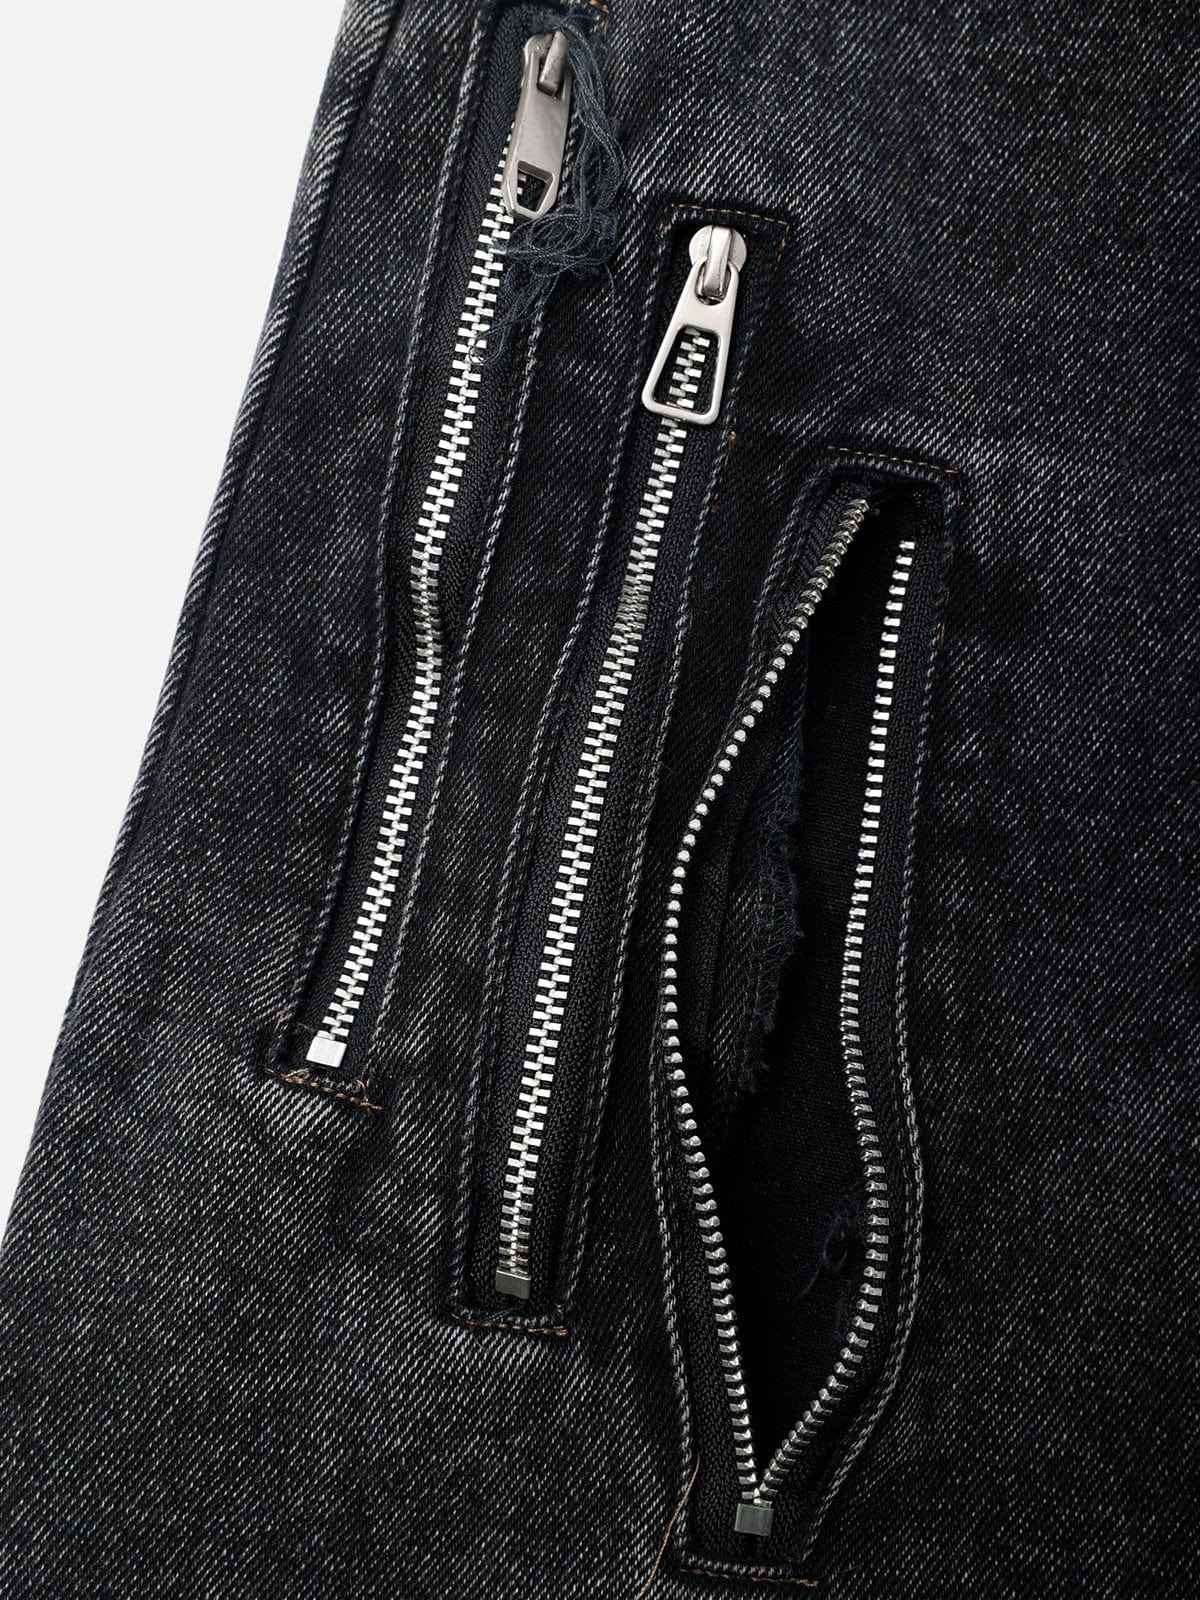 NEV Multi-strap Wrap Draggin Jeans